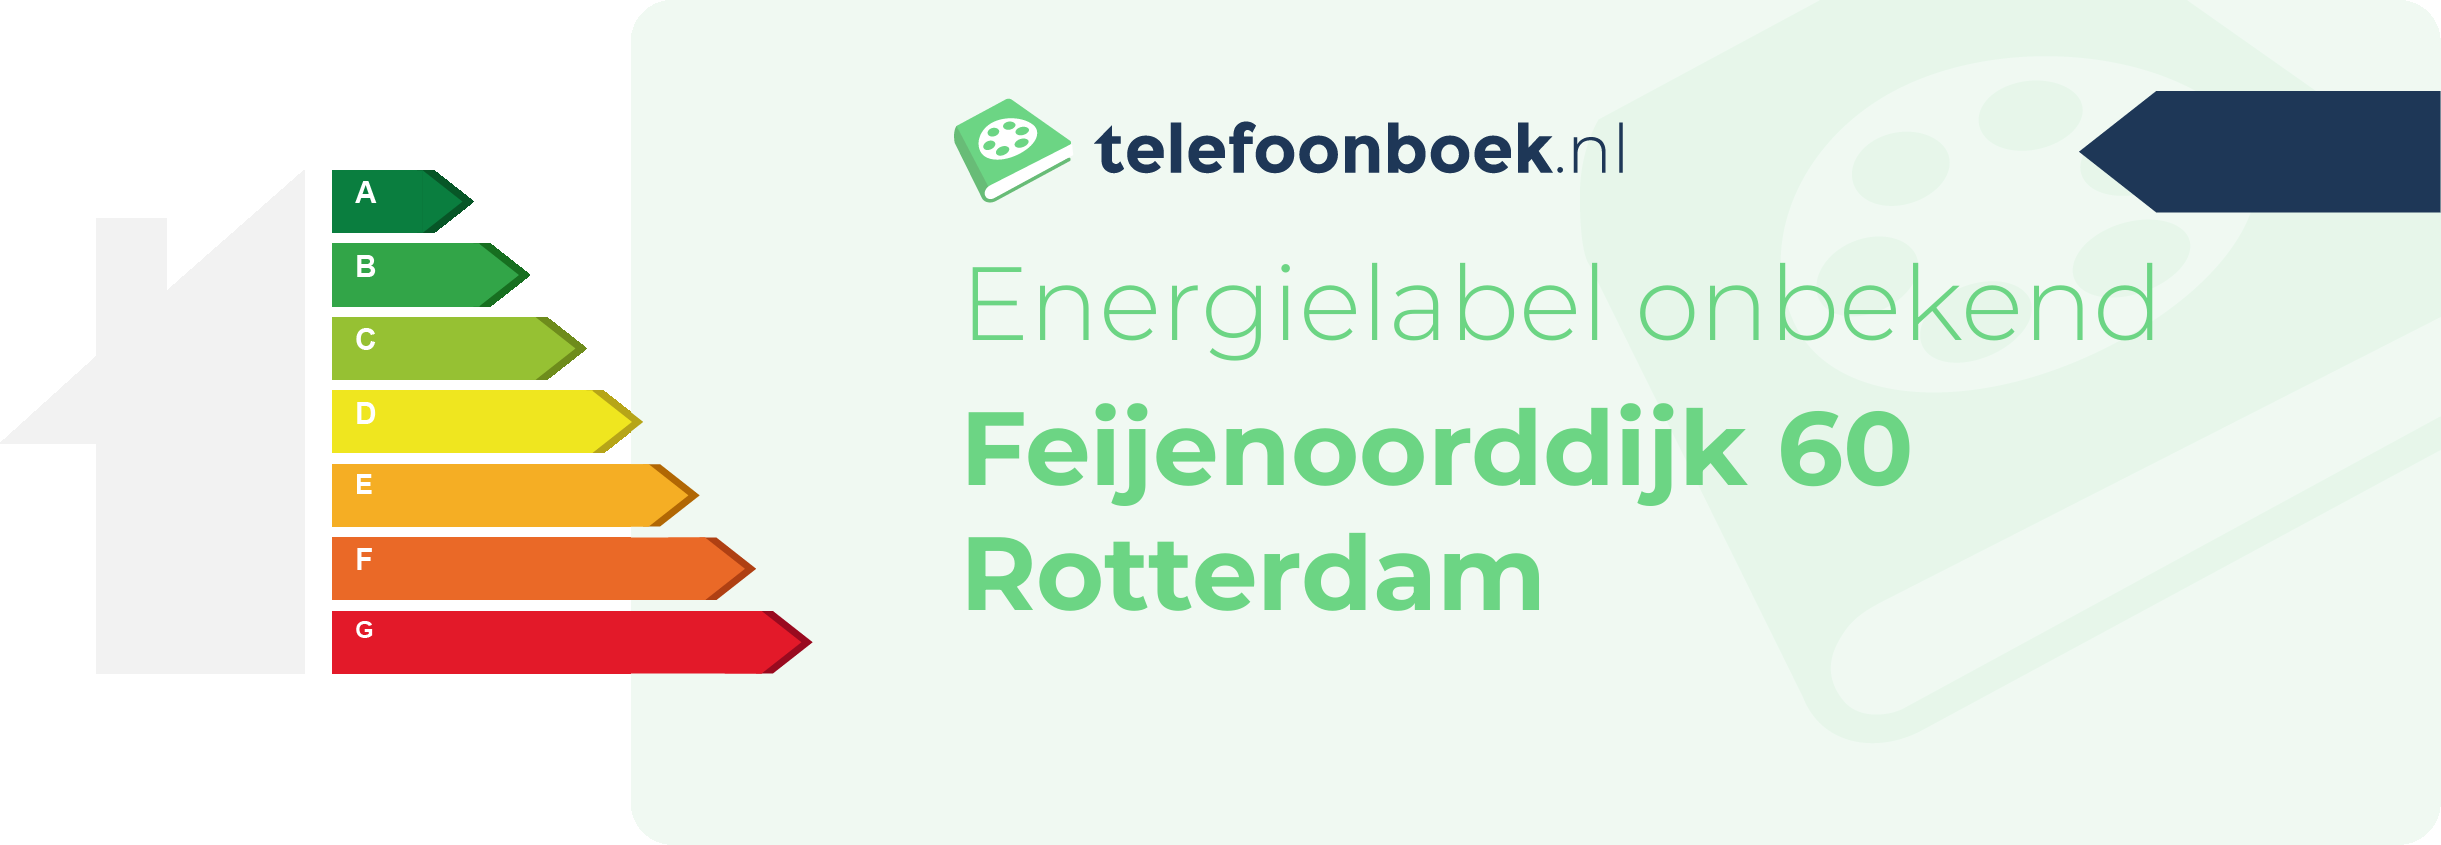 Energielabel Feijenoorddijk 60 Rotterdam